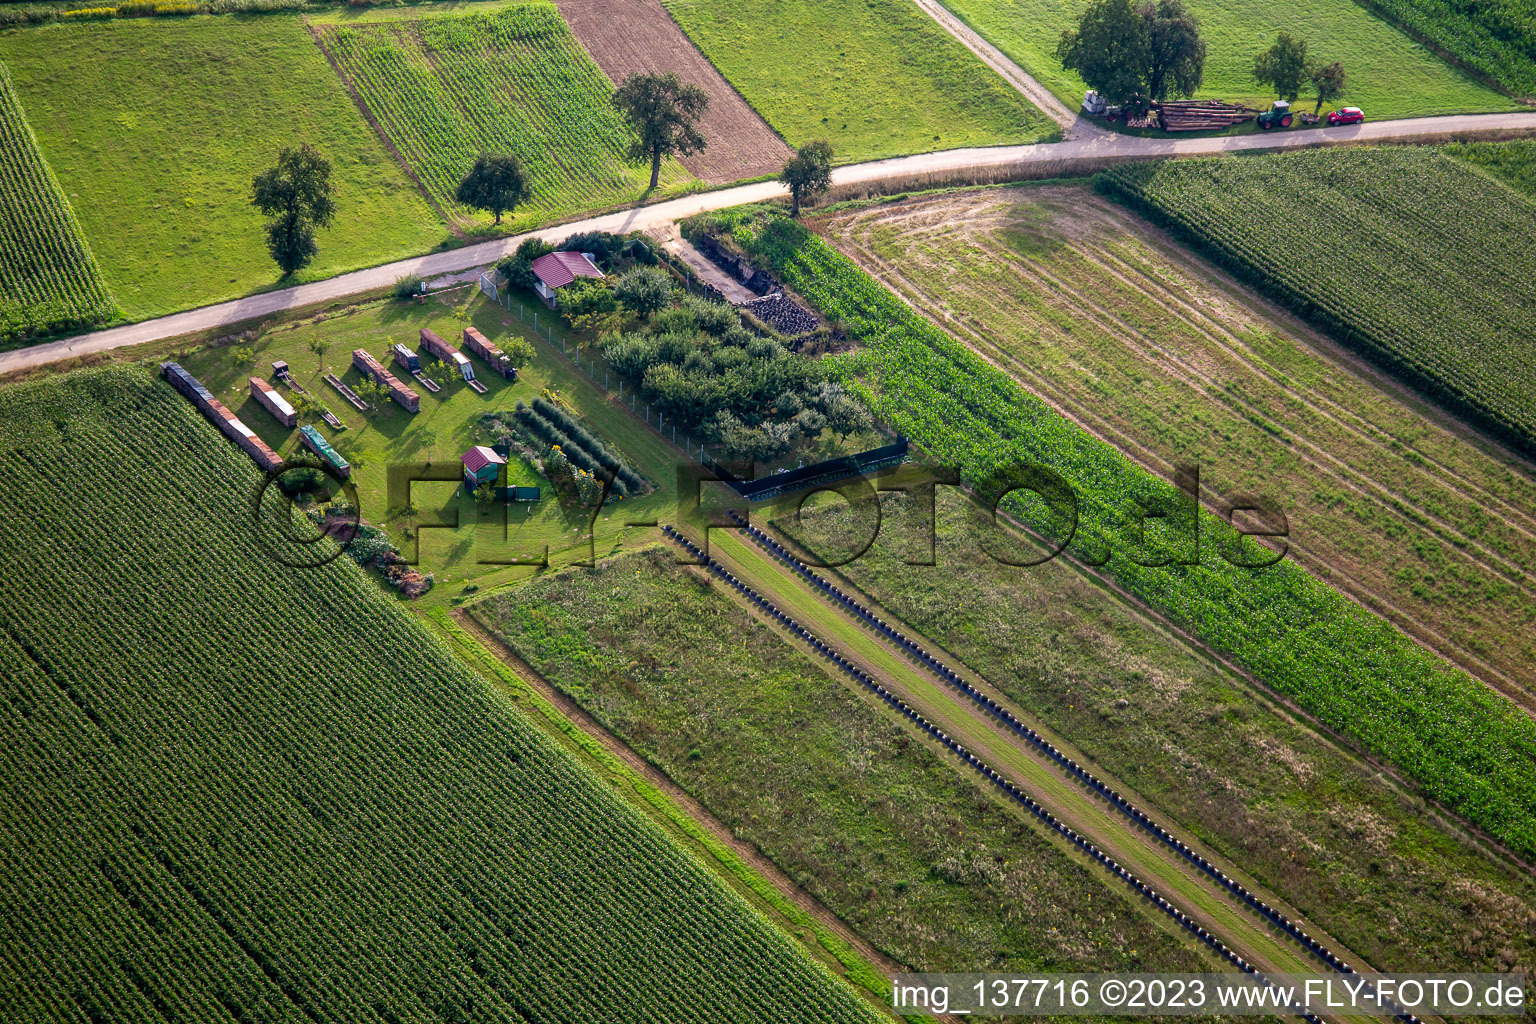 Luftbild von Gartenanlage in Aschbach im Bundesland Bas-Rhin, Frankreich